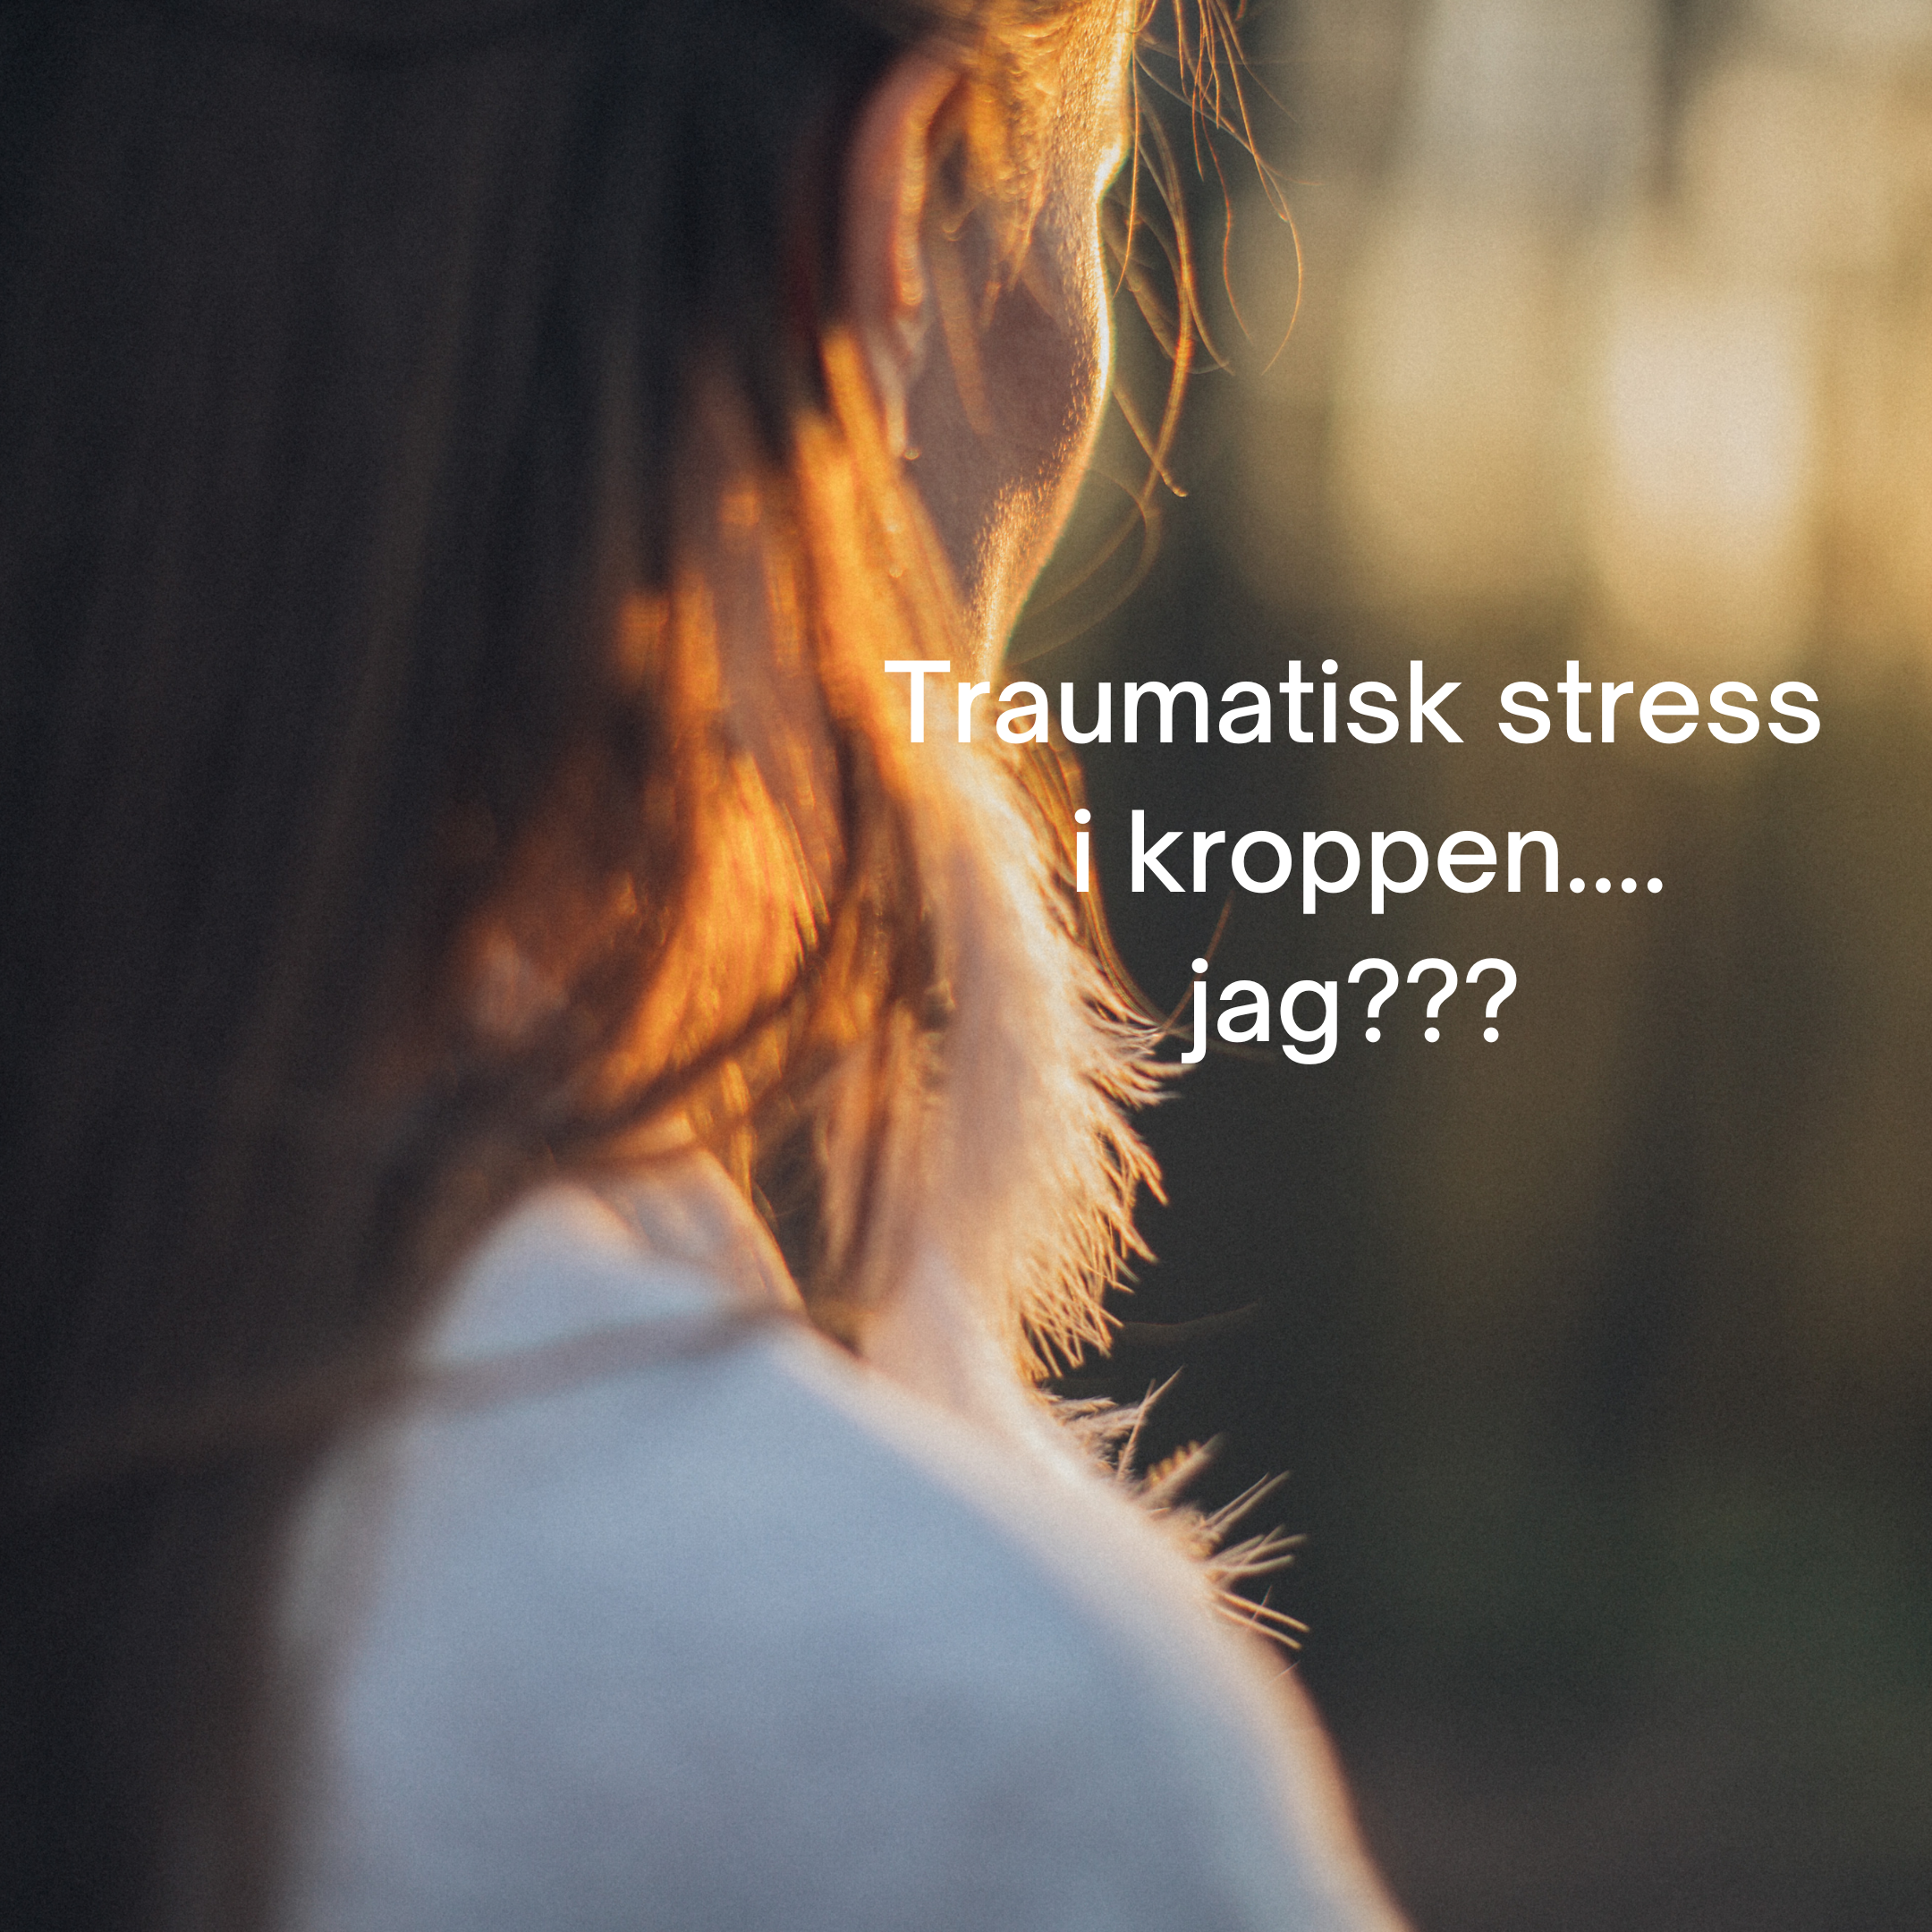 Traumatisk stress i kroppen…Jag?